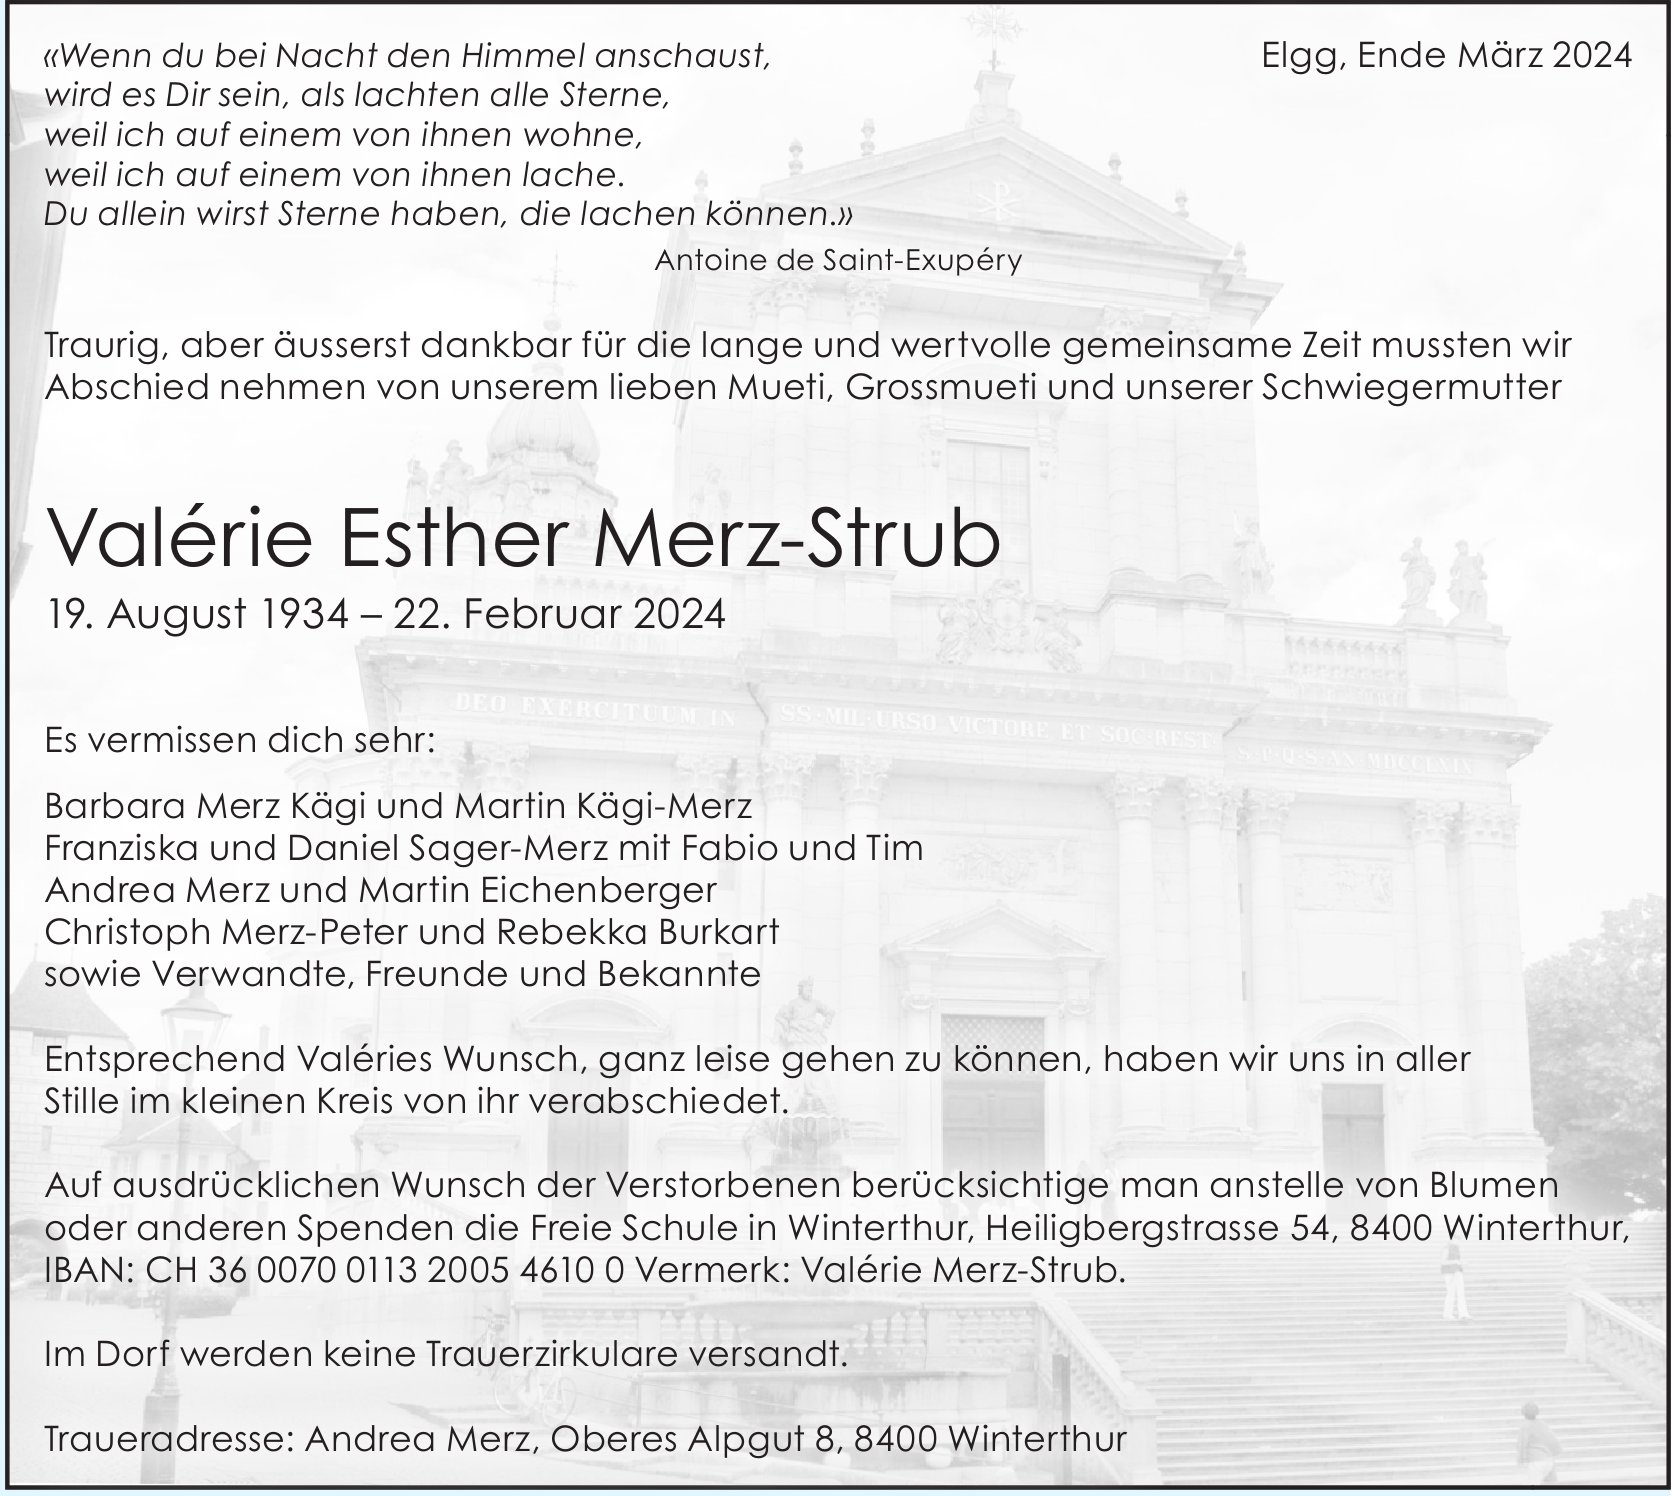 Merz-Strub Valérie Esther, Februar 2024 / TA